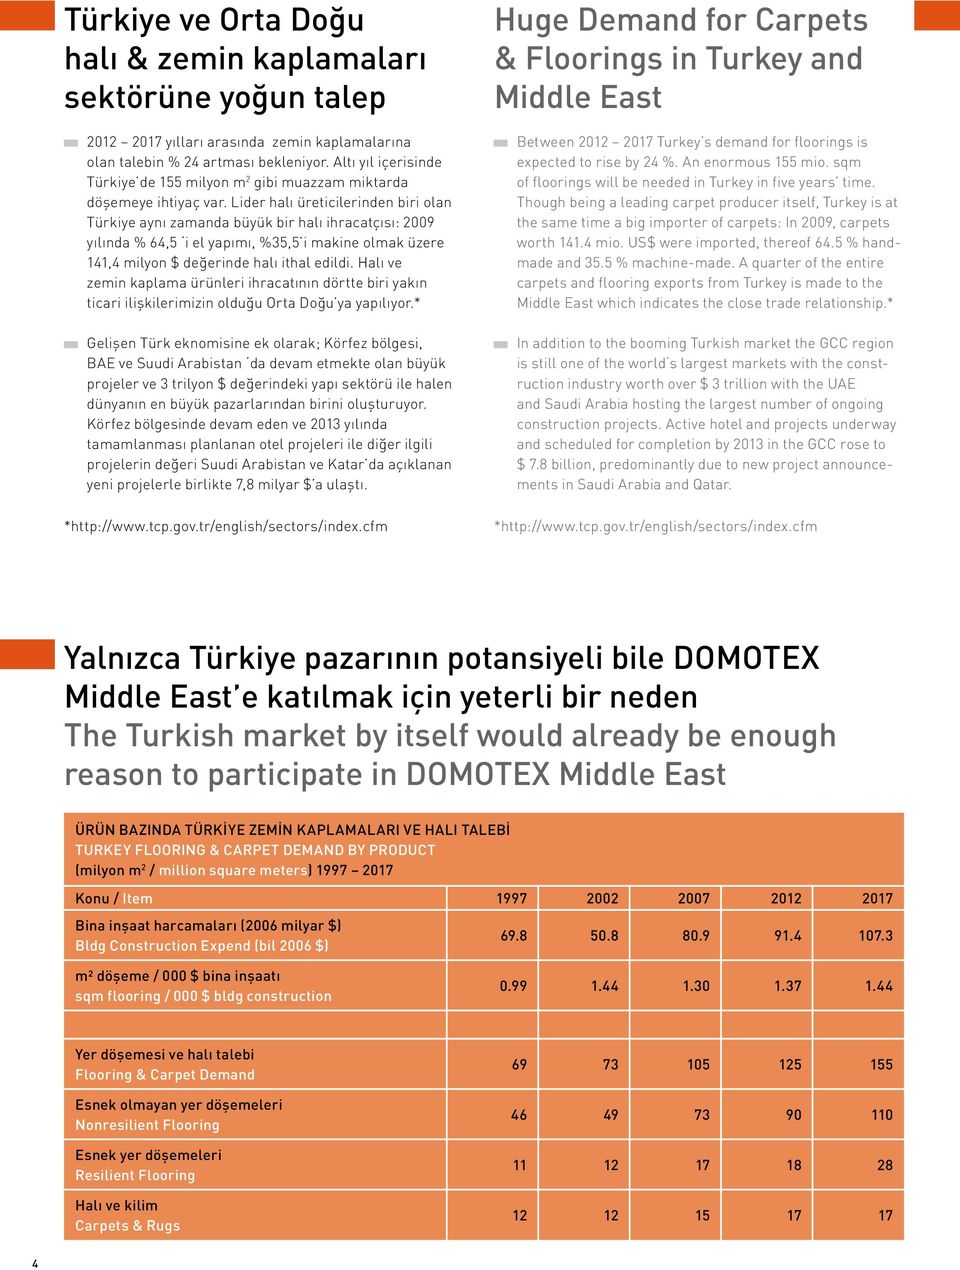 Lider halı üreticilerinden biri olan Türkiye aynı zamanda büyük bir halı ihracatçısı: 2009 yılında % 64,5 i el yapımı, %35,5 i makine olmak üzere 141,4 milyon $ değerinde halı ithal edildi.